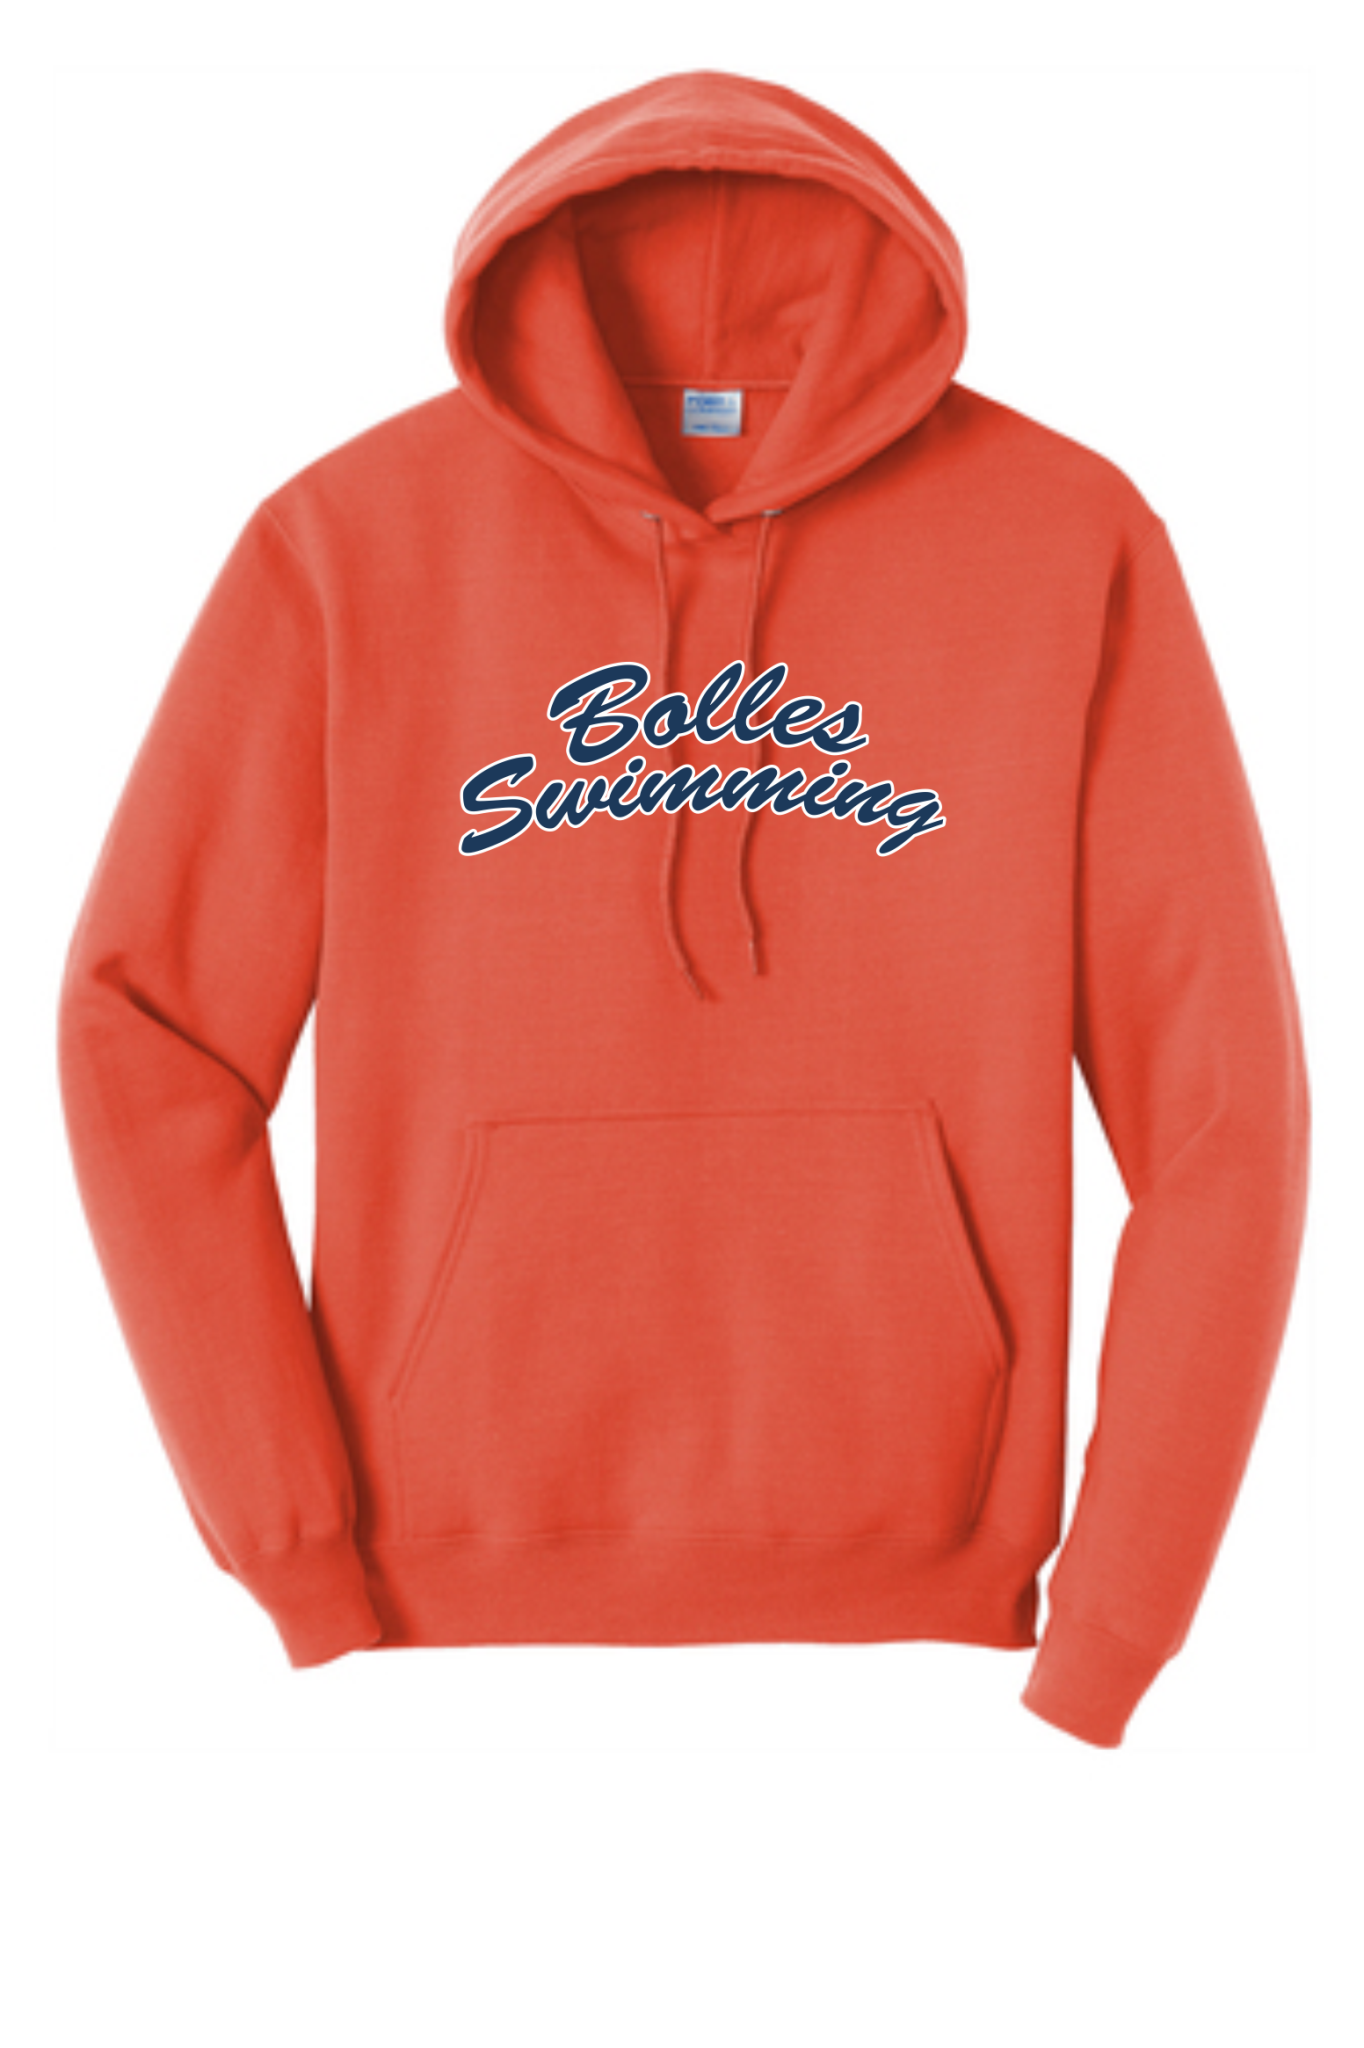 Bolles Orange Swimming Hoodie - The Bolles School